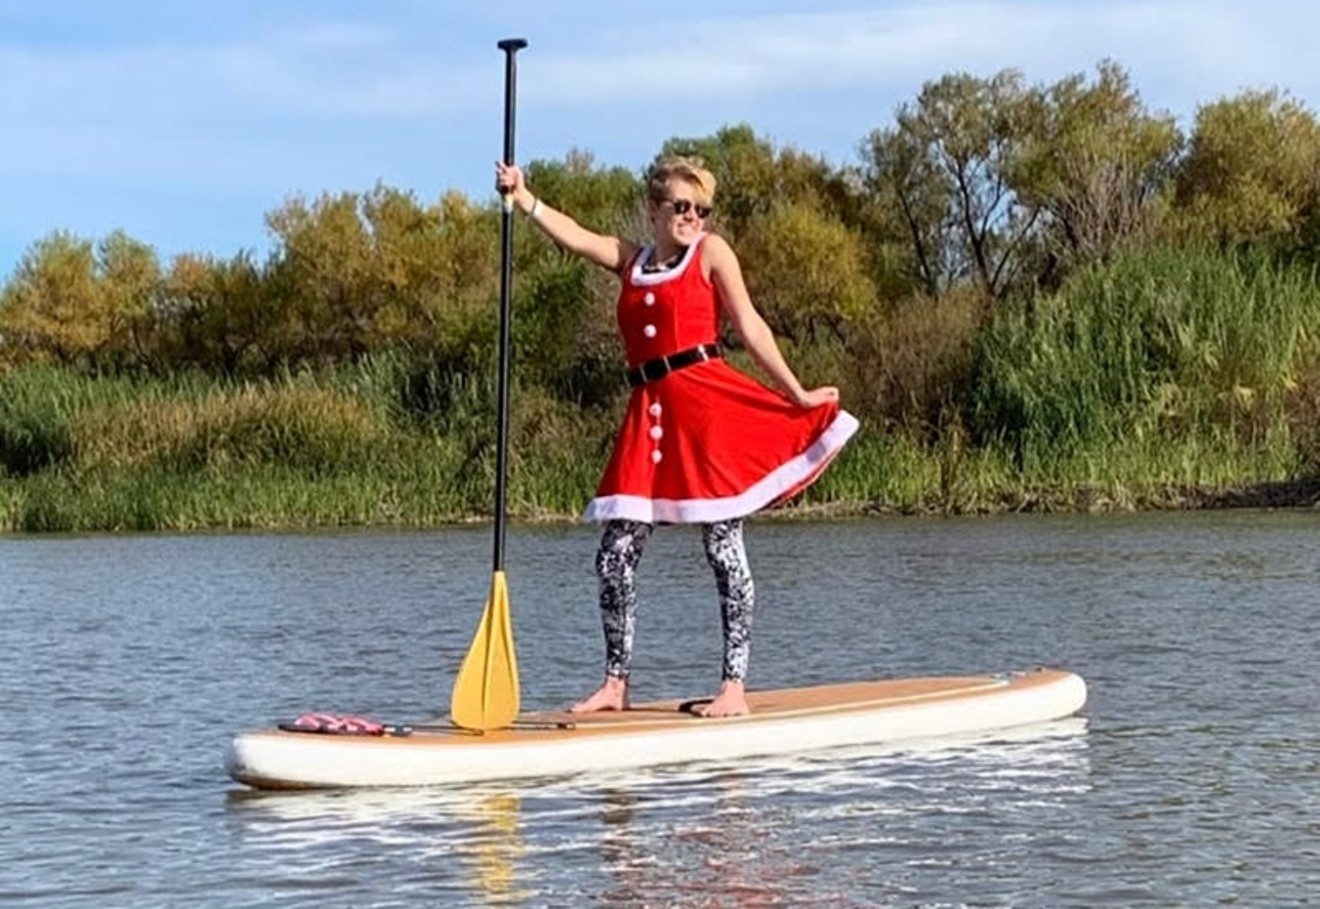 Nautical but nice holiday fun awaits at Santa's Festive Paddle on Friday, December 23, at Tempe Town Lake.